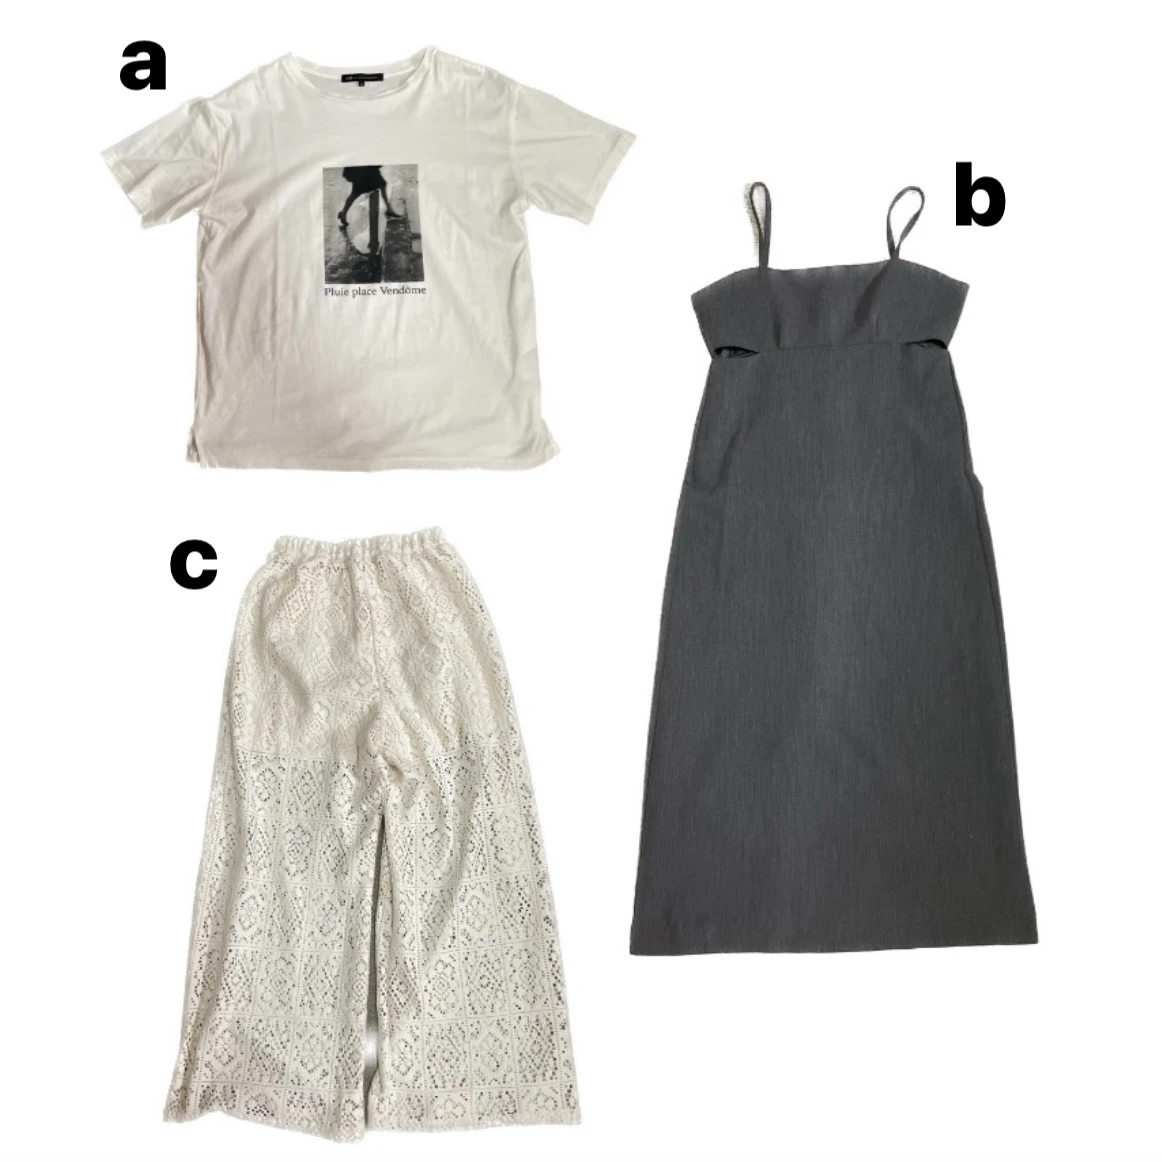 a:Tシャツ/23区、b:キャミワンピース/mystic、c:ボトムス/mline